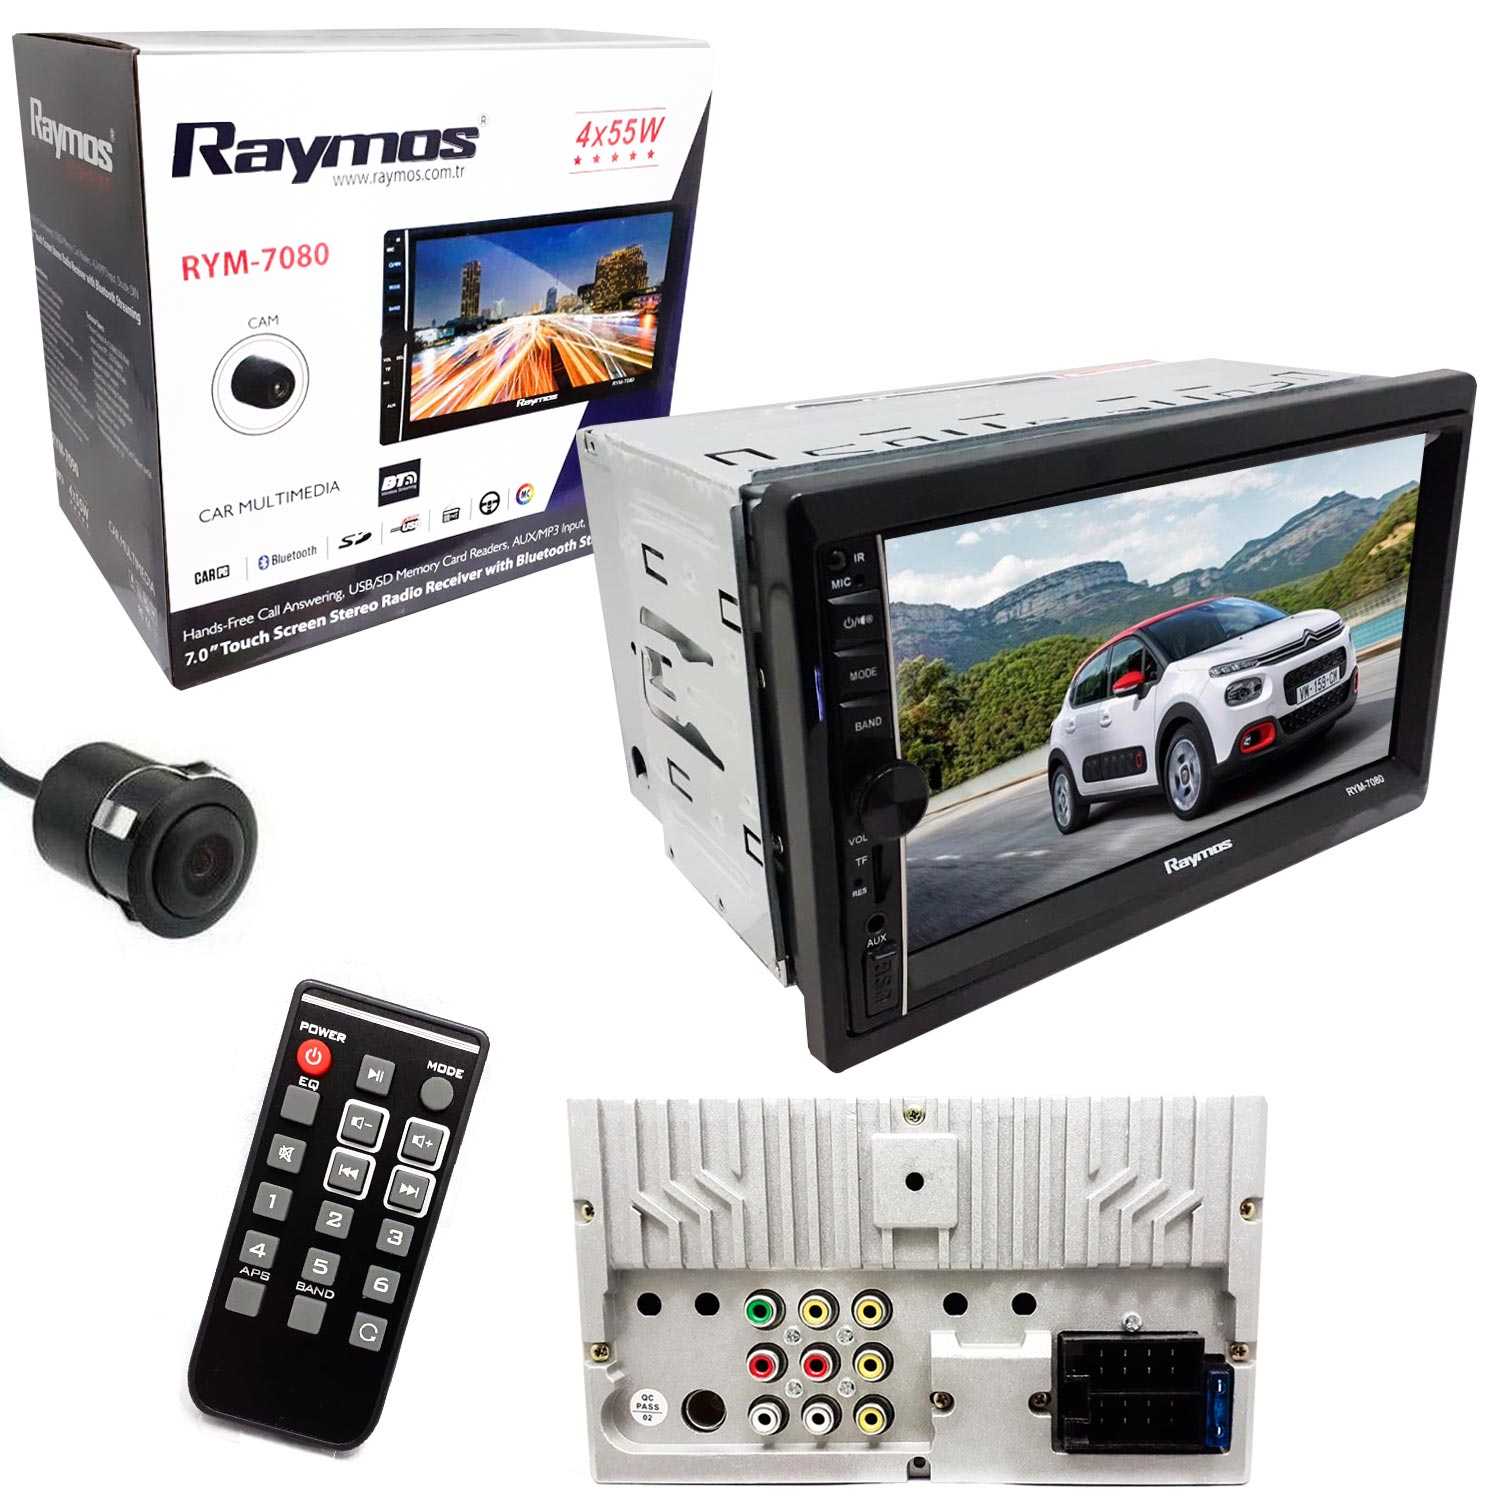 DOUBLE TEYP 7 4X55W BT/USB/SD/FM/AUX KAMERALI RAYMOS RYM-7080